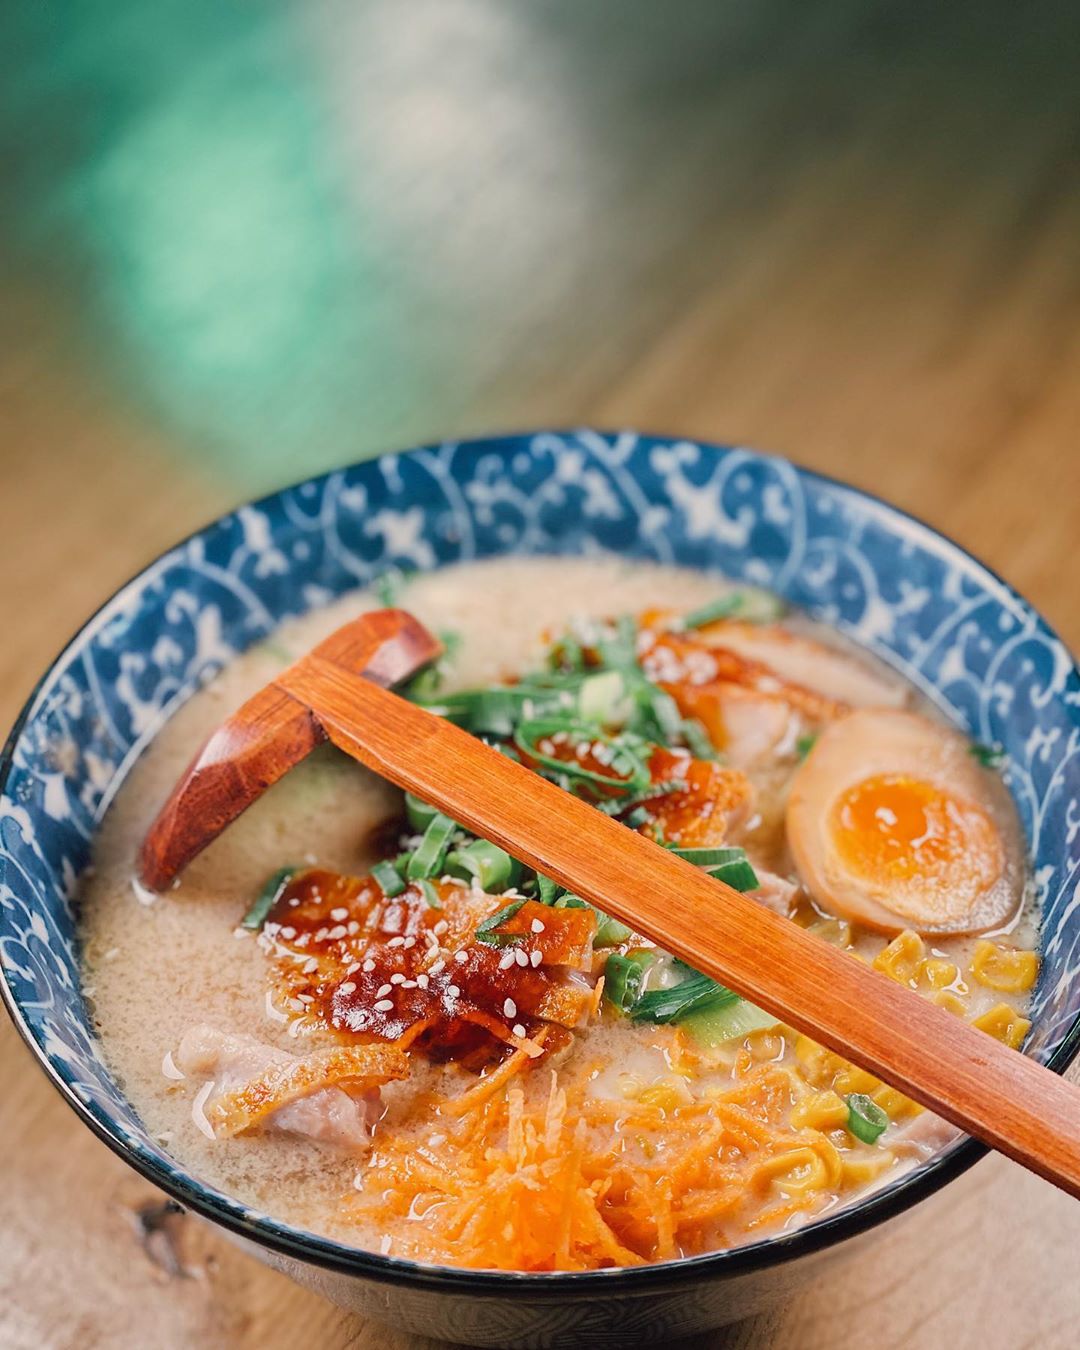 Chicken Noodle Soup by Xu ? .
.
.
.
.
.
#XuNoodleBar #Tilburg #Tillie #Noodles #Asian #Chinese #Food #Homemade #Hotspot #FollowUs #SendNoods #WaarTilburgEet